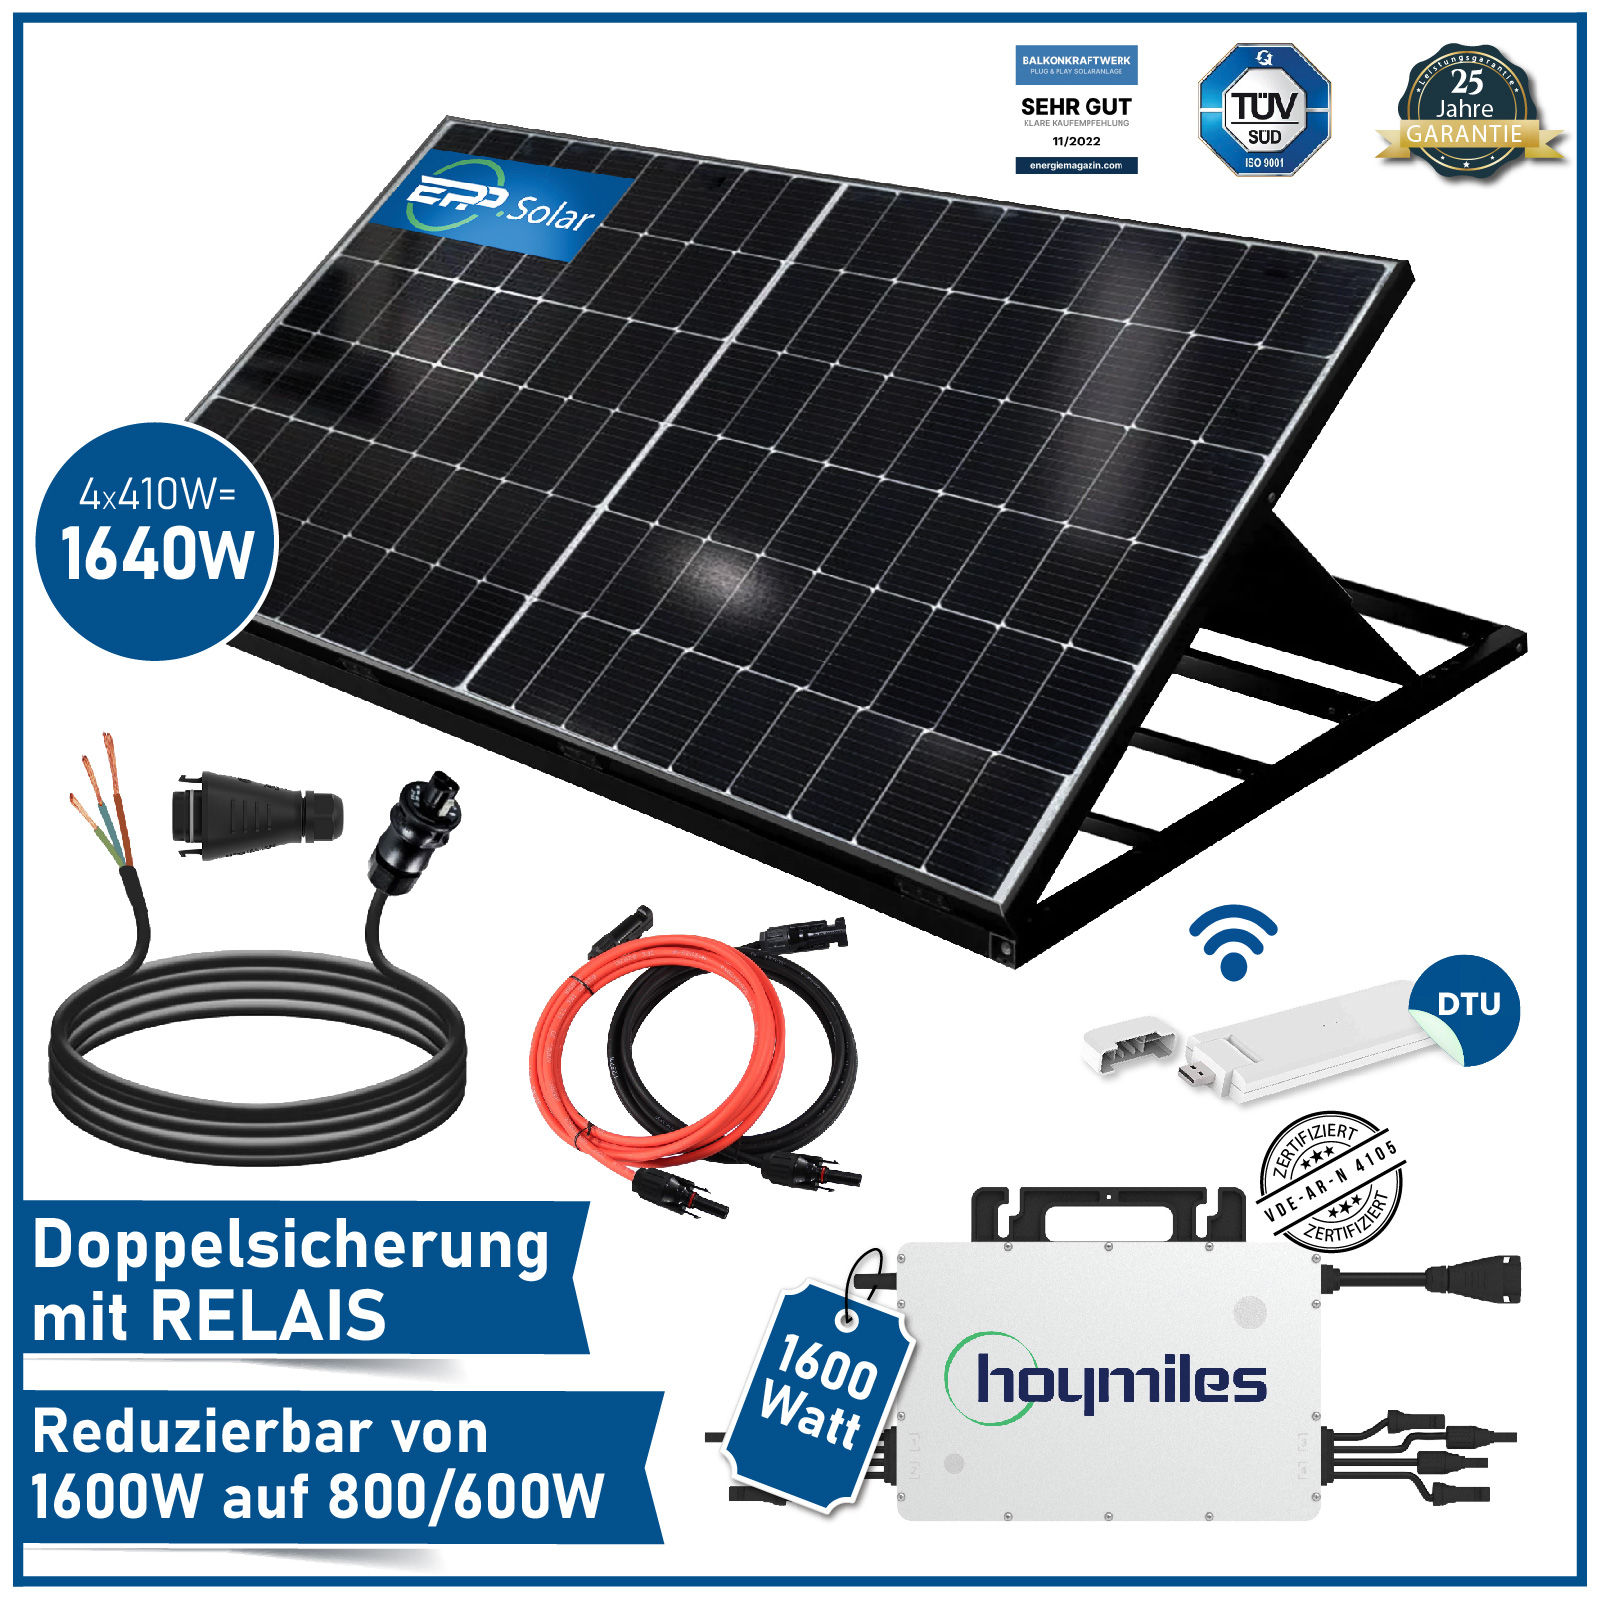 1640W/1600W Plug & Play Solaranlage Komplettset inkl. EPP 410W